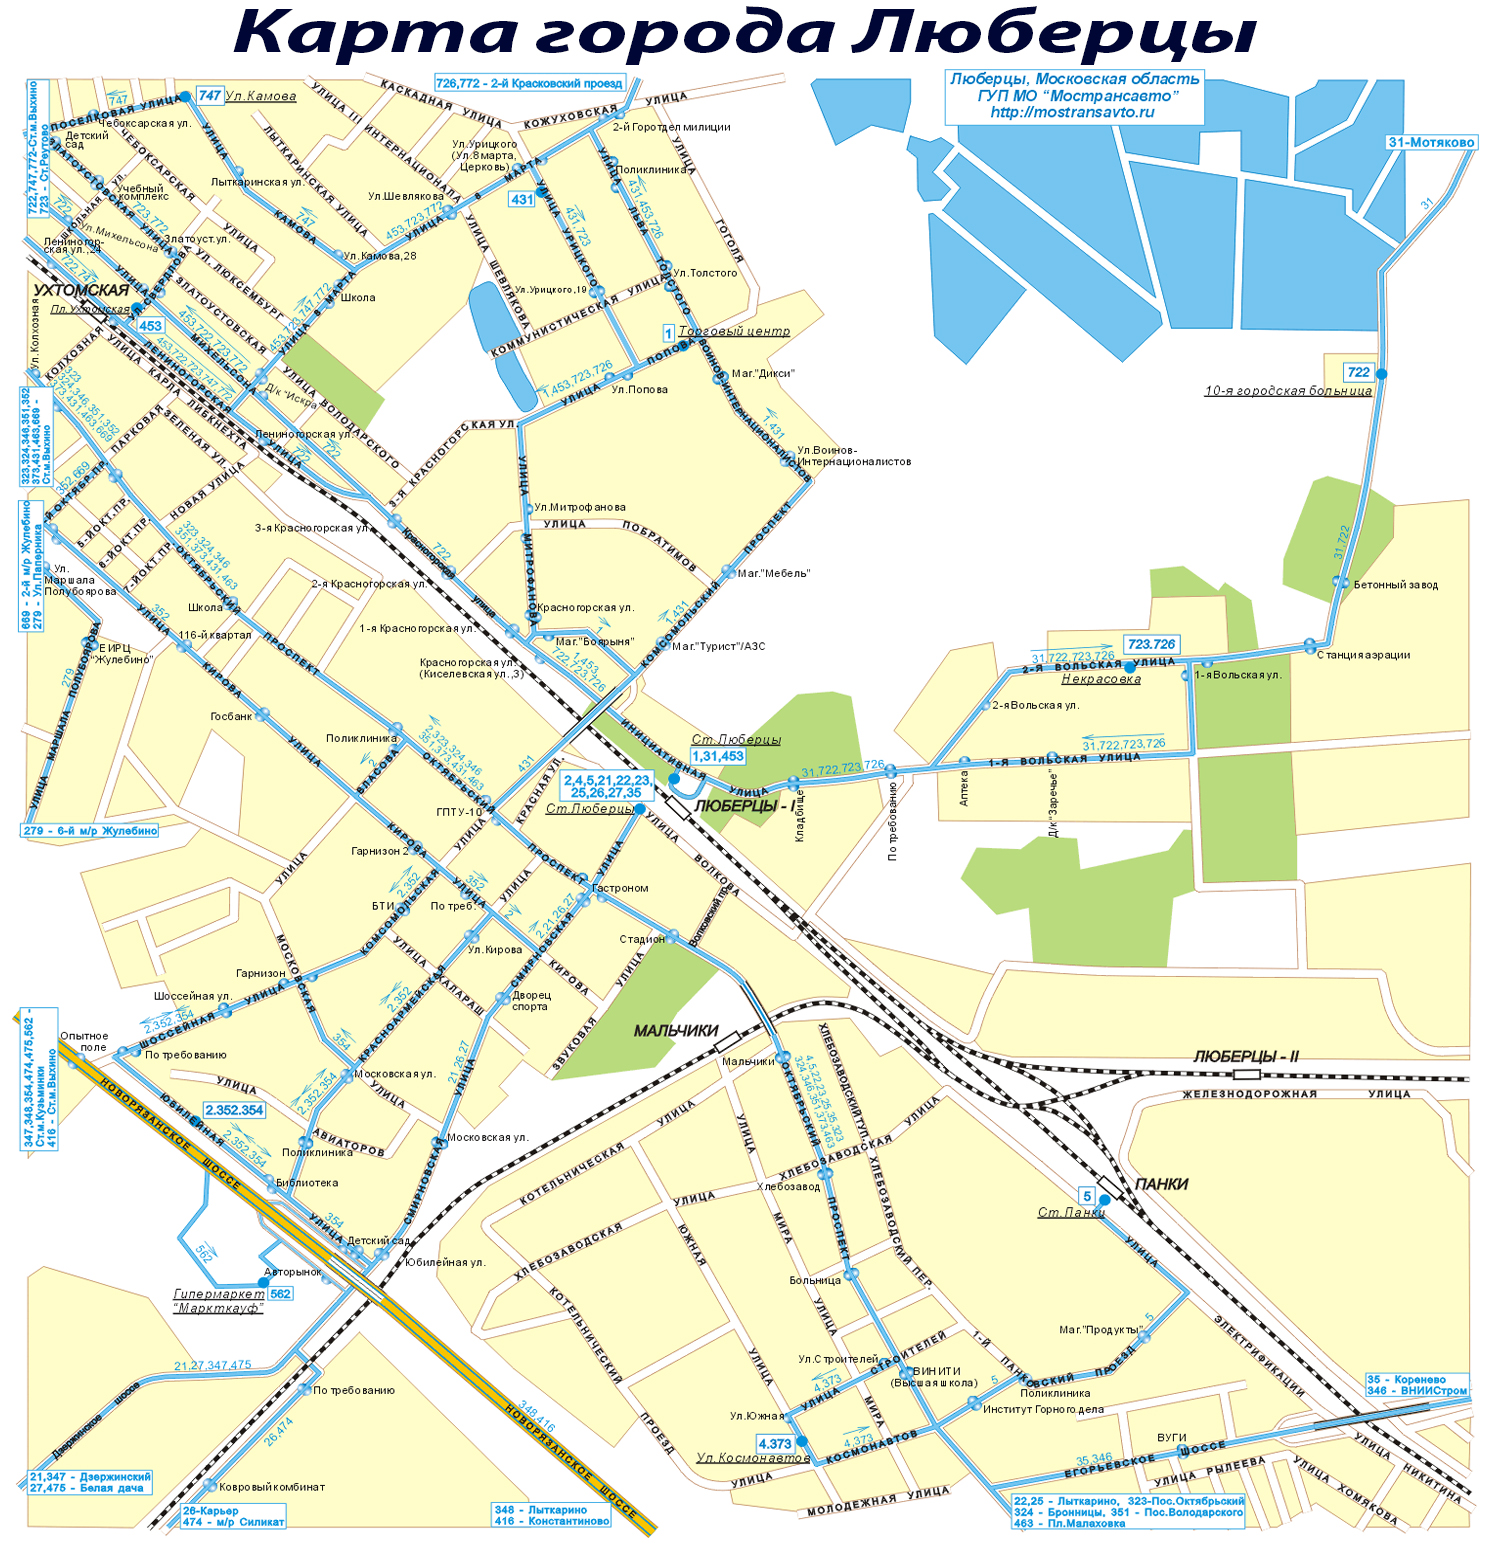 Карта г. Люберцы, улицы, дома, дороги.